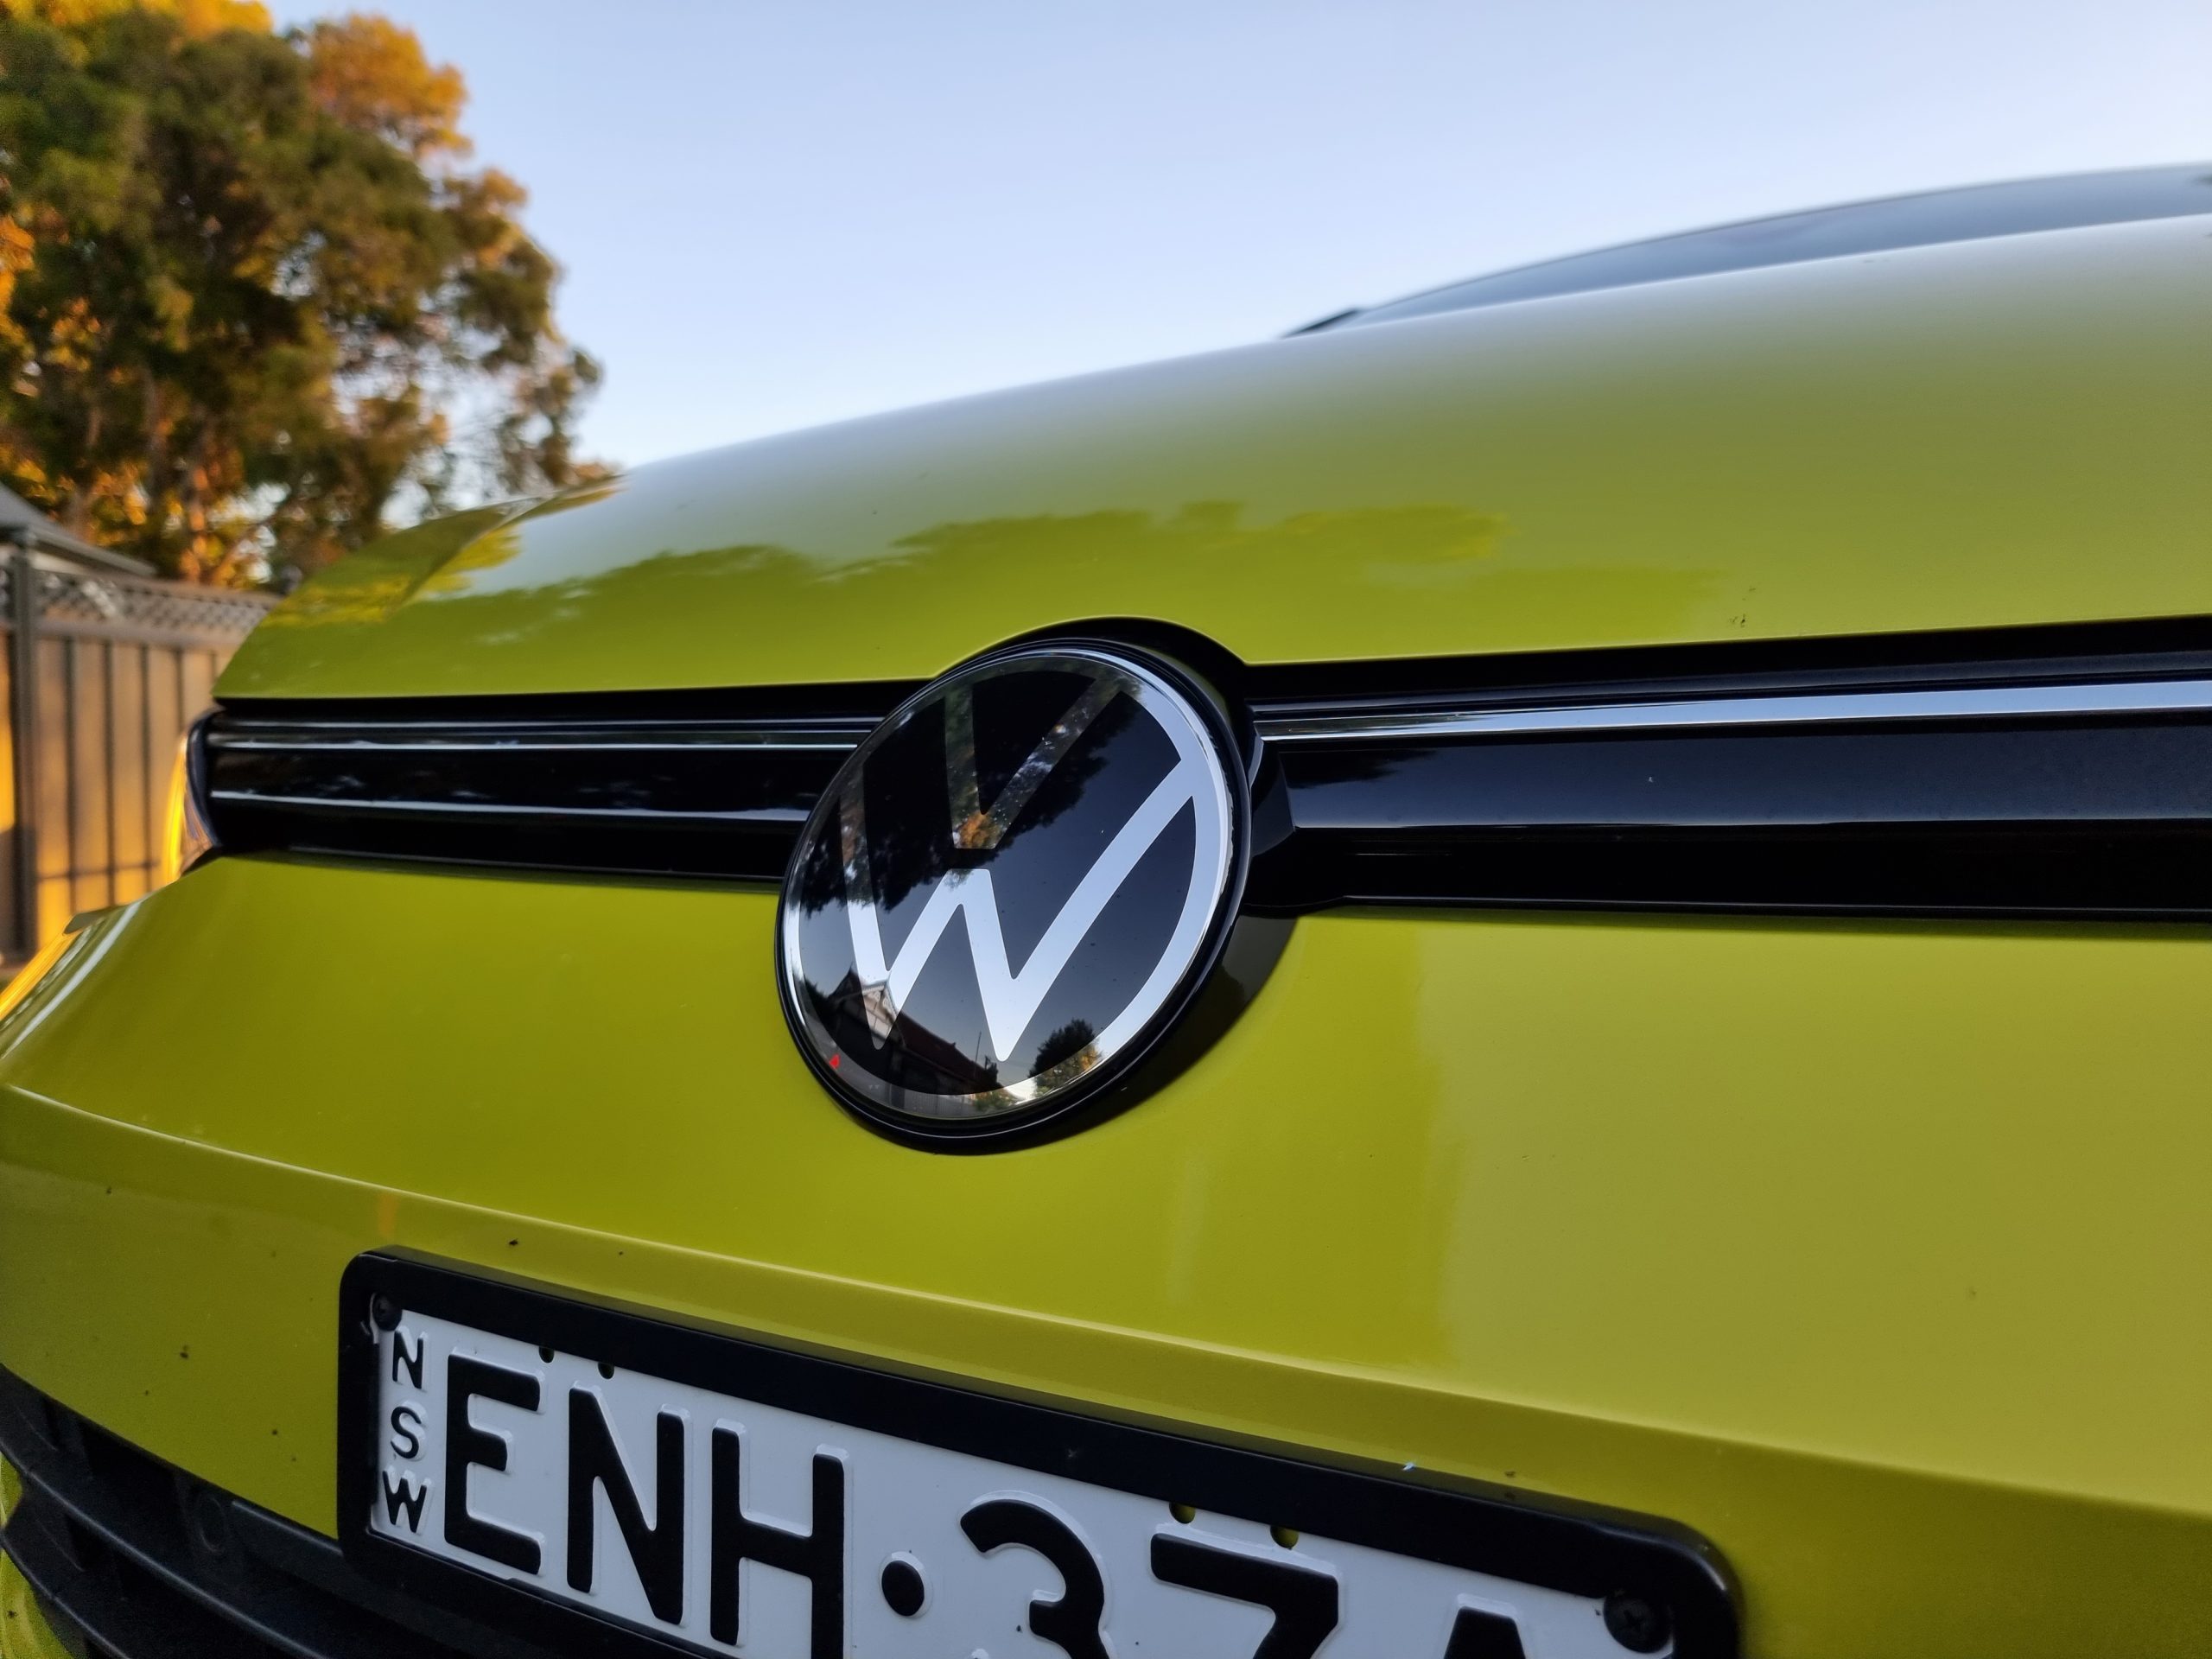 2022 VW Golf Wagon rear logo